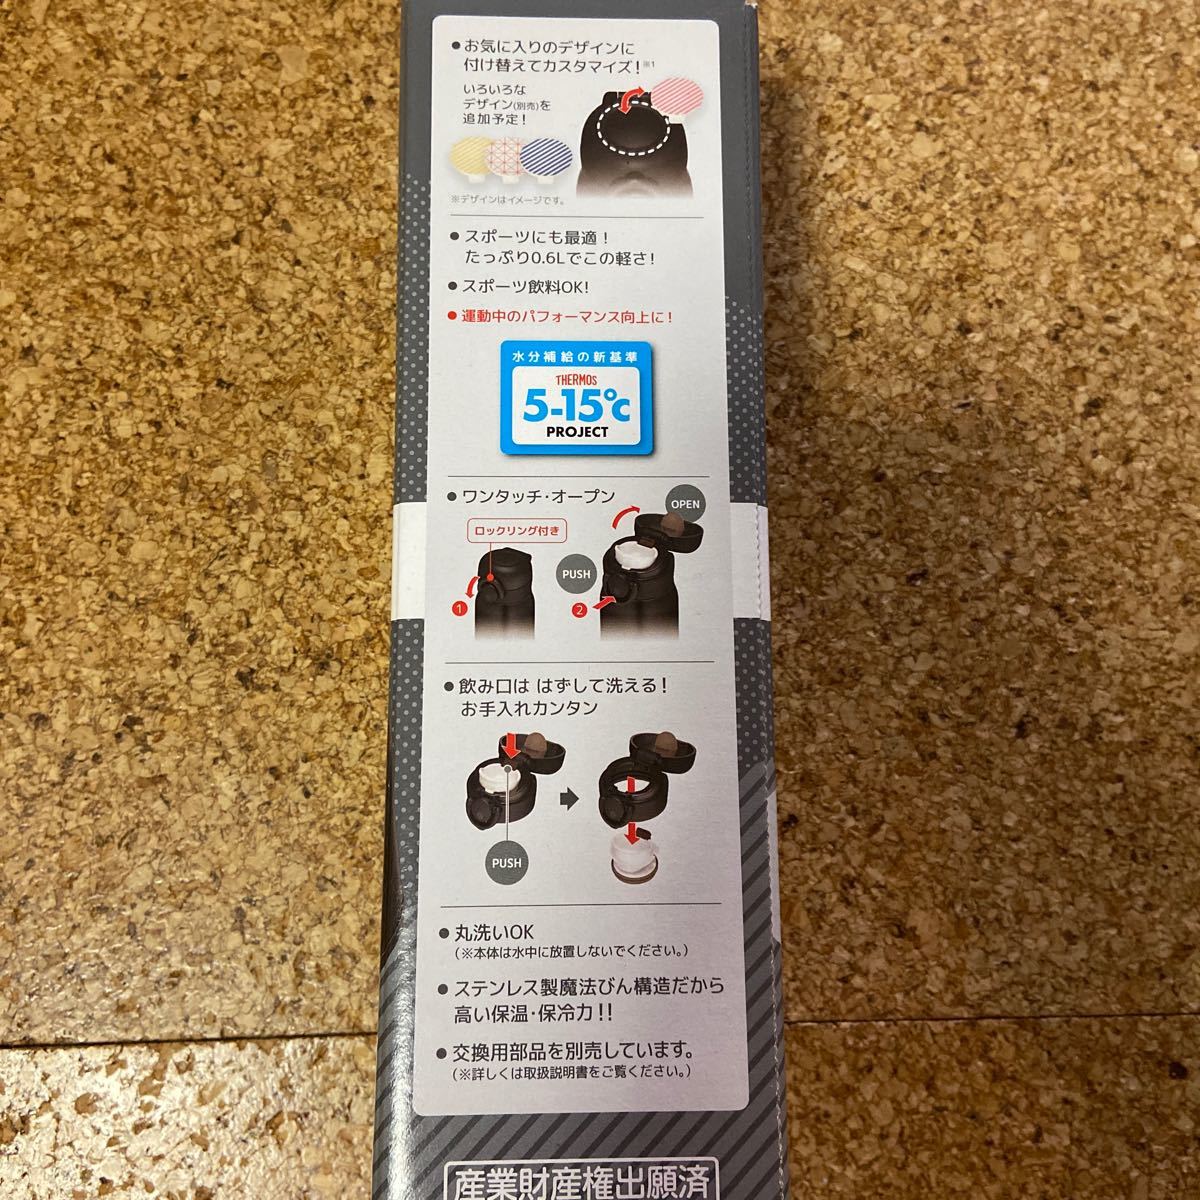 真空断熱ケータイマグ 0.6L（マットブラック）JNR-601 MTBK 3,608円にて購入